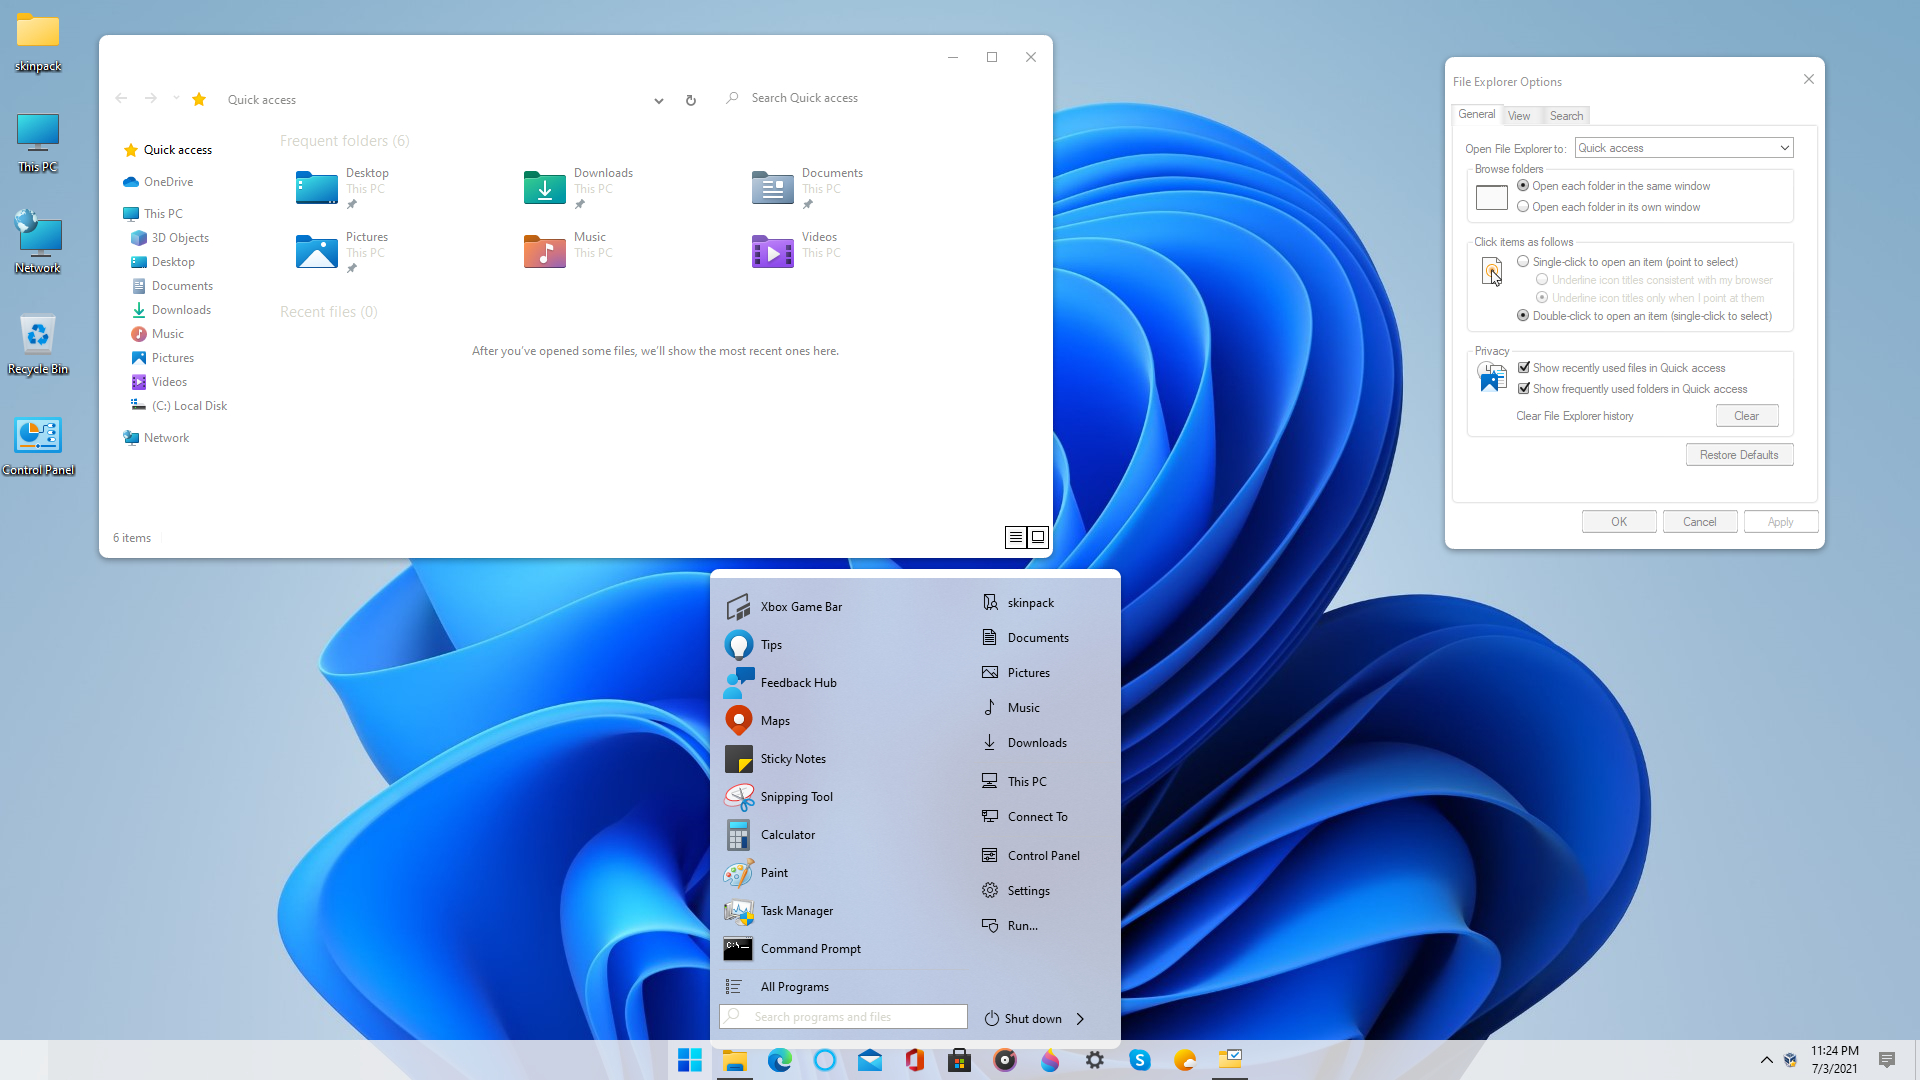 Windows 11 SkinPack: Hãy tận hưởng giao diện đẹp mắt của Windows 11 chỉ với một vài cú click chuột! Dùng SkinPack để thay đổi giao diện của máy tính của bạn hoàn toàn miễn phí và đơn giản. Chỉ cần tải xuống và cài đặt, bạn có thể thay đổi giao diện của mình và tạo ra một trải nghiệm mới cho việc sử dụng máy tính.